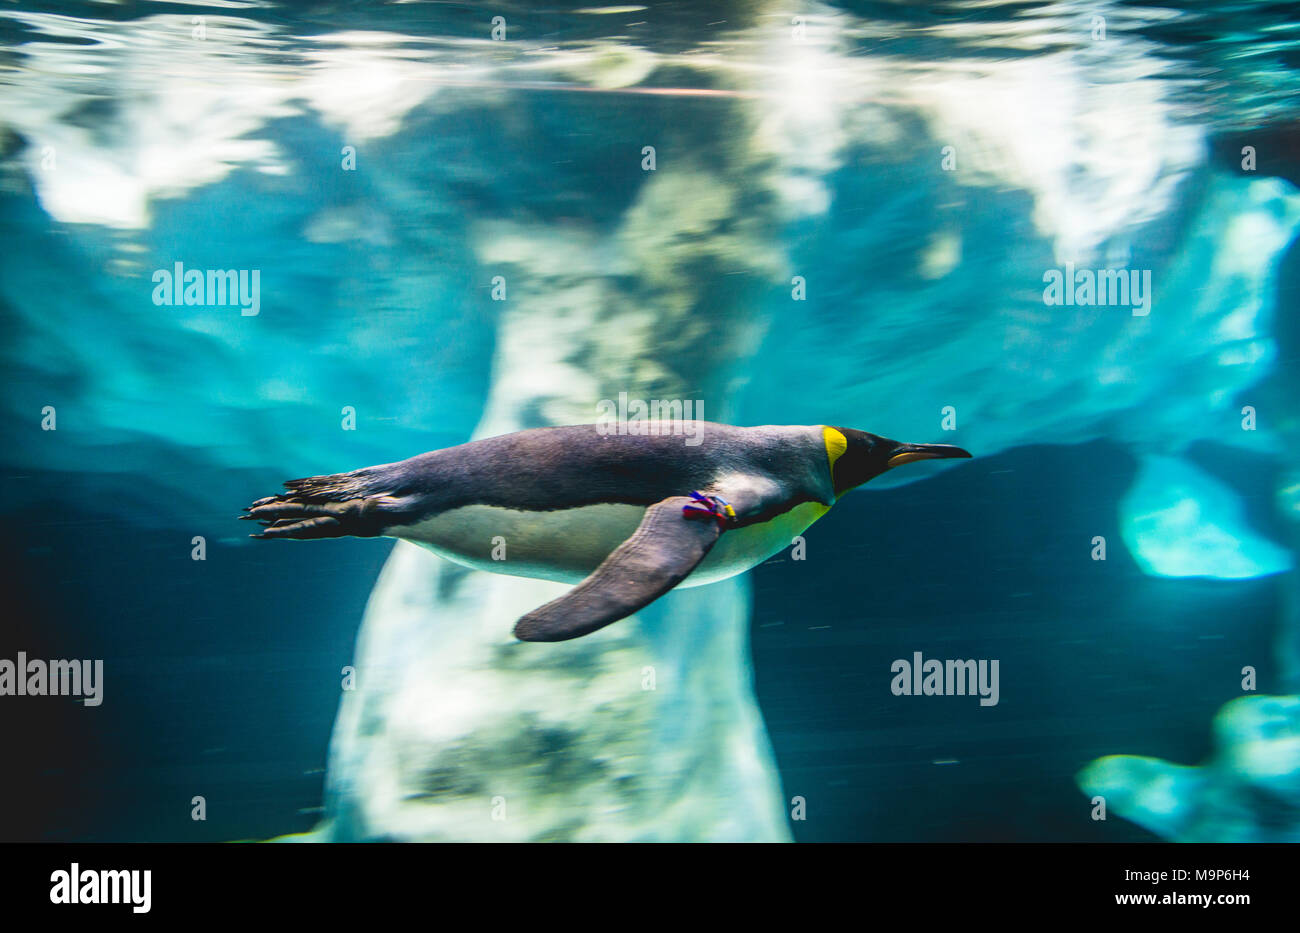 Pinguino reale (Aptenodytes patagonicus) dives, nuota sott'acqua, fotografia subacquea, penguinarium planet Penguin, Loro Parque Tenerife Zoo, Puerto de Foto Stock